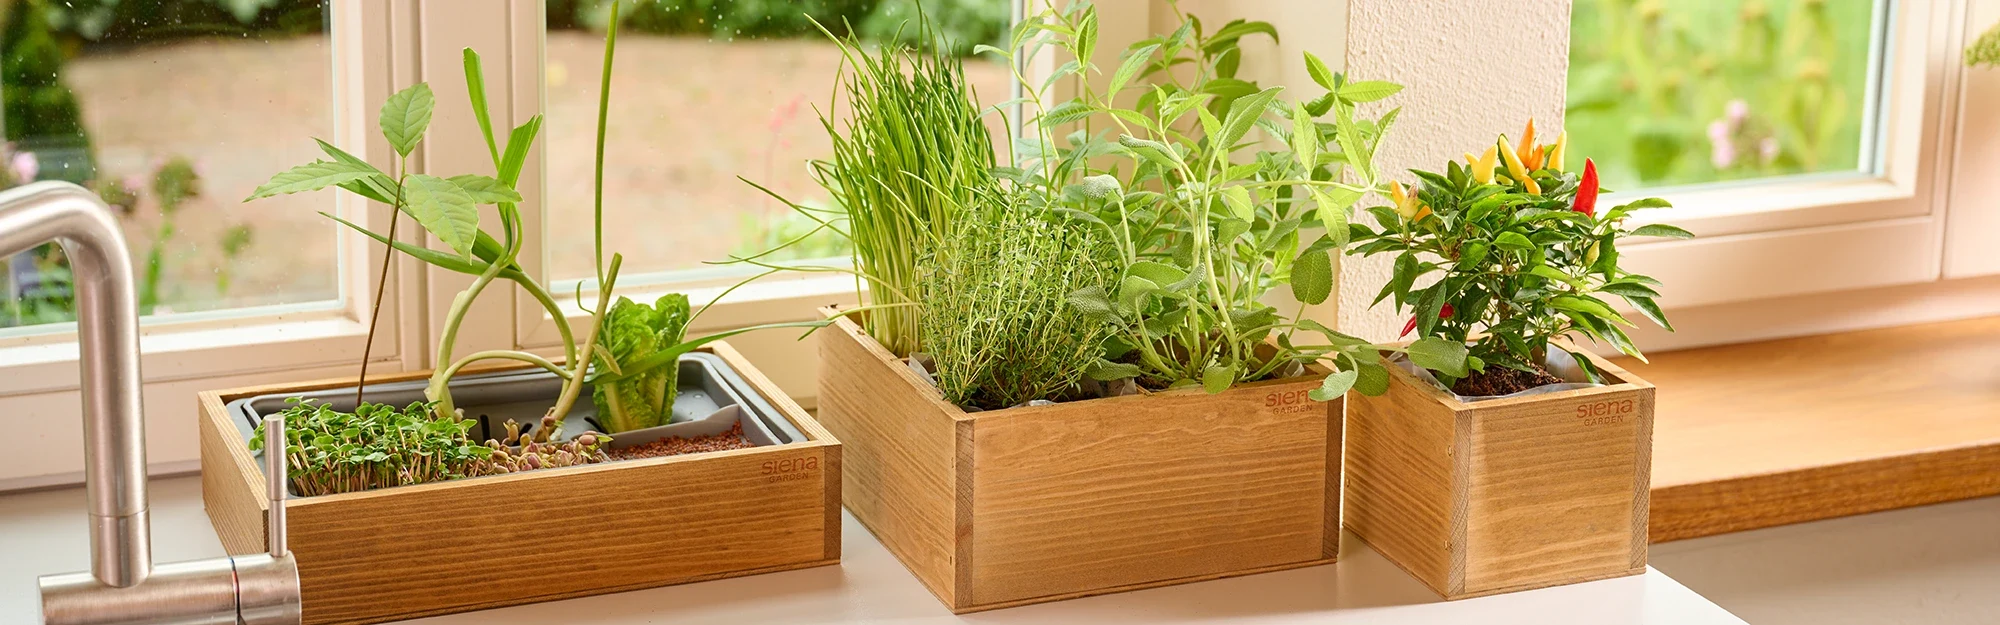 3 mit Erde befüllte Holzboxen und Pflanzen auf einer Fensterbank